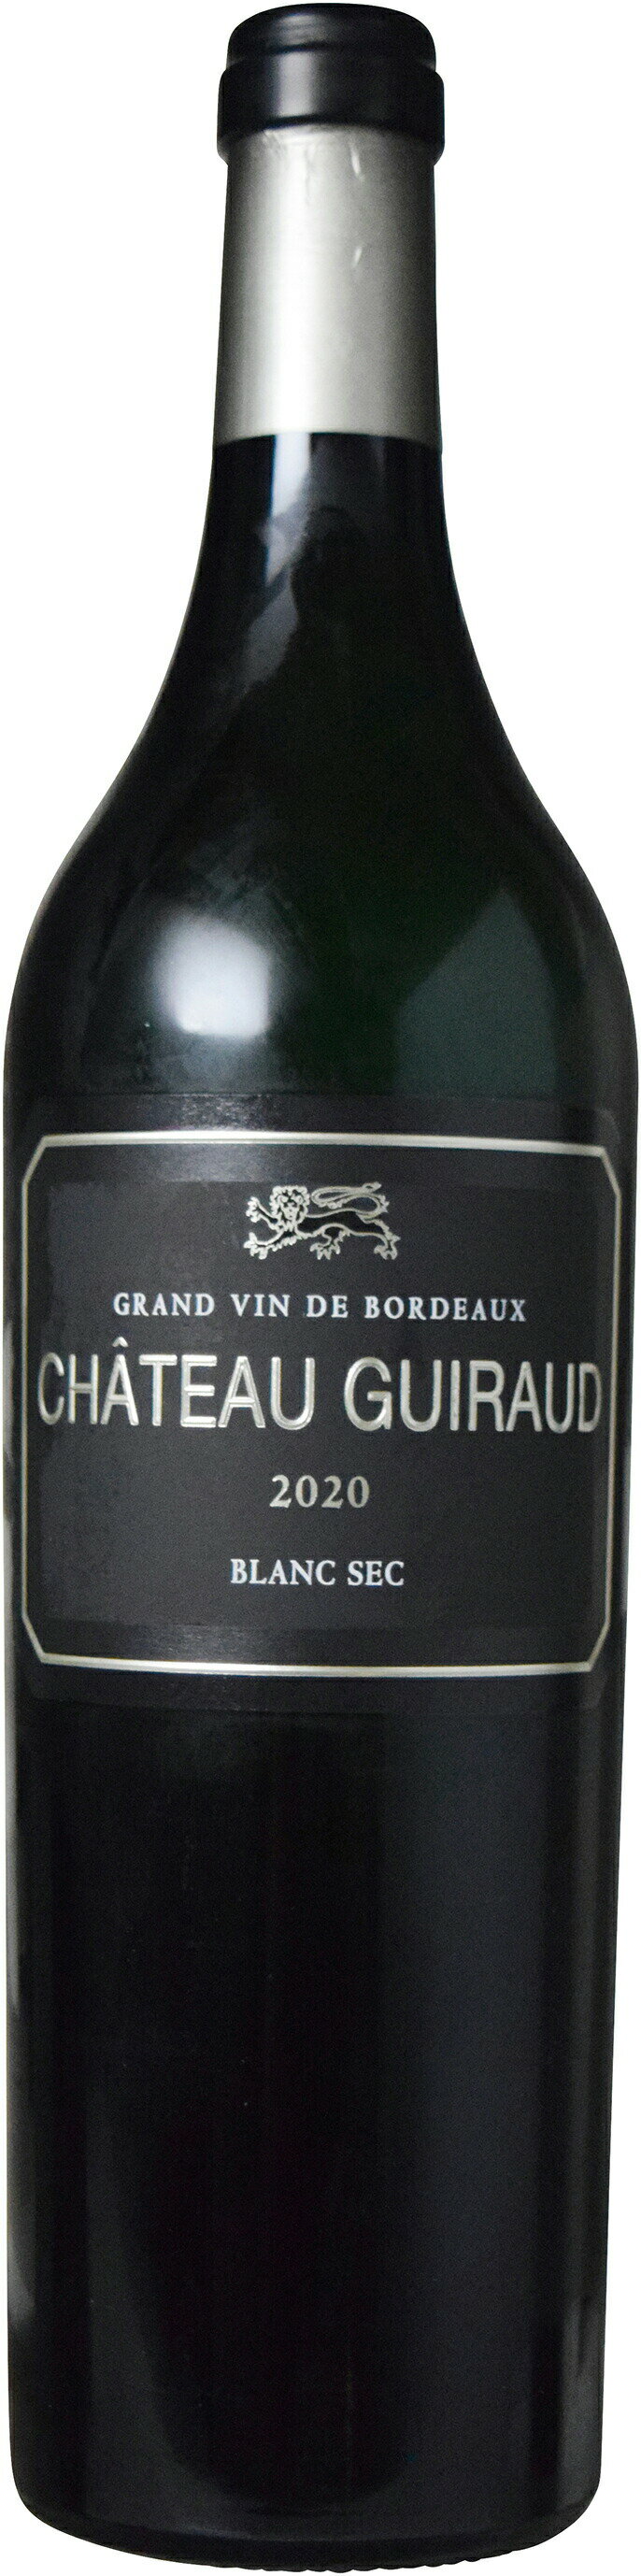 生産者名 Chateau Guiraud シャトー・ギロー 商品名 Grand Vin Blanc Sec de Chateau Guiraud グラン・ヴァン・ブラン・セック・ド・シャトー・ギロー ヴィンテーx 入数750ml 原産国フランス 地方ボルドー 品質分類・原産地呼称A.O.C.ボルドー 格付 品種ソーヴィニヨン・ブラン 70%/セミヨン 30% 醗酵オーク樽(シャトー・ギローに使用した樽) 熟成主にオーク樽熟成12カ月 平均年間生産量11,000本 ALC度数14％ キャップ仕様コルク 種類スティルワイン 色白 味わい辛口 飲み頃温度10℃ ボトルサイズ(幅/高さ/奥行) 76 x 302 x 76 mm コメント・評価情報 コメントソーテルヌの1級シャトー、ギローが作る上級辛口ワイン。洗練された果実味と綺麗なバランスの酸が美しい。最上級の辛口の区画から選ばれたキュヴェです。 ビオ情報 ビオロジック認証情報 Agriculture Biologique その他の認証 ワイン・スペクテーター得点 ワイン・アドヴォケイト得点 90 コンクール入賞歴 海外ワイン専門誌評価歴(2020)「ジェームス・サックリング」 92点